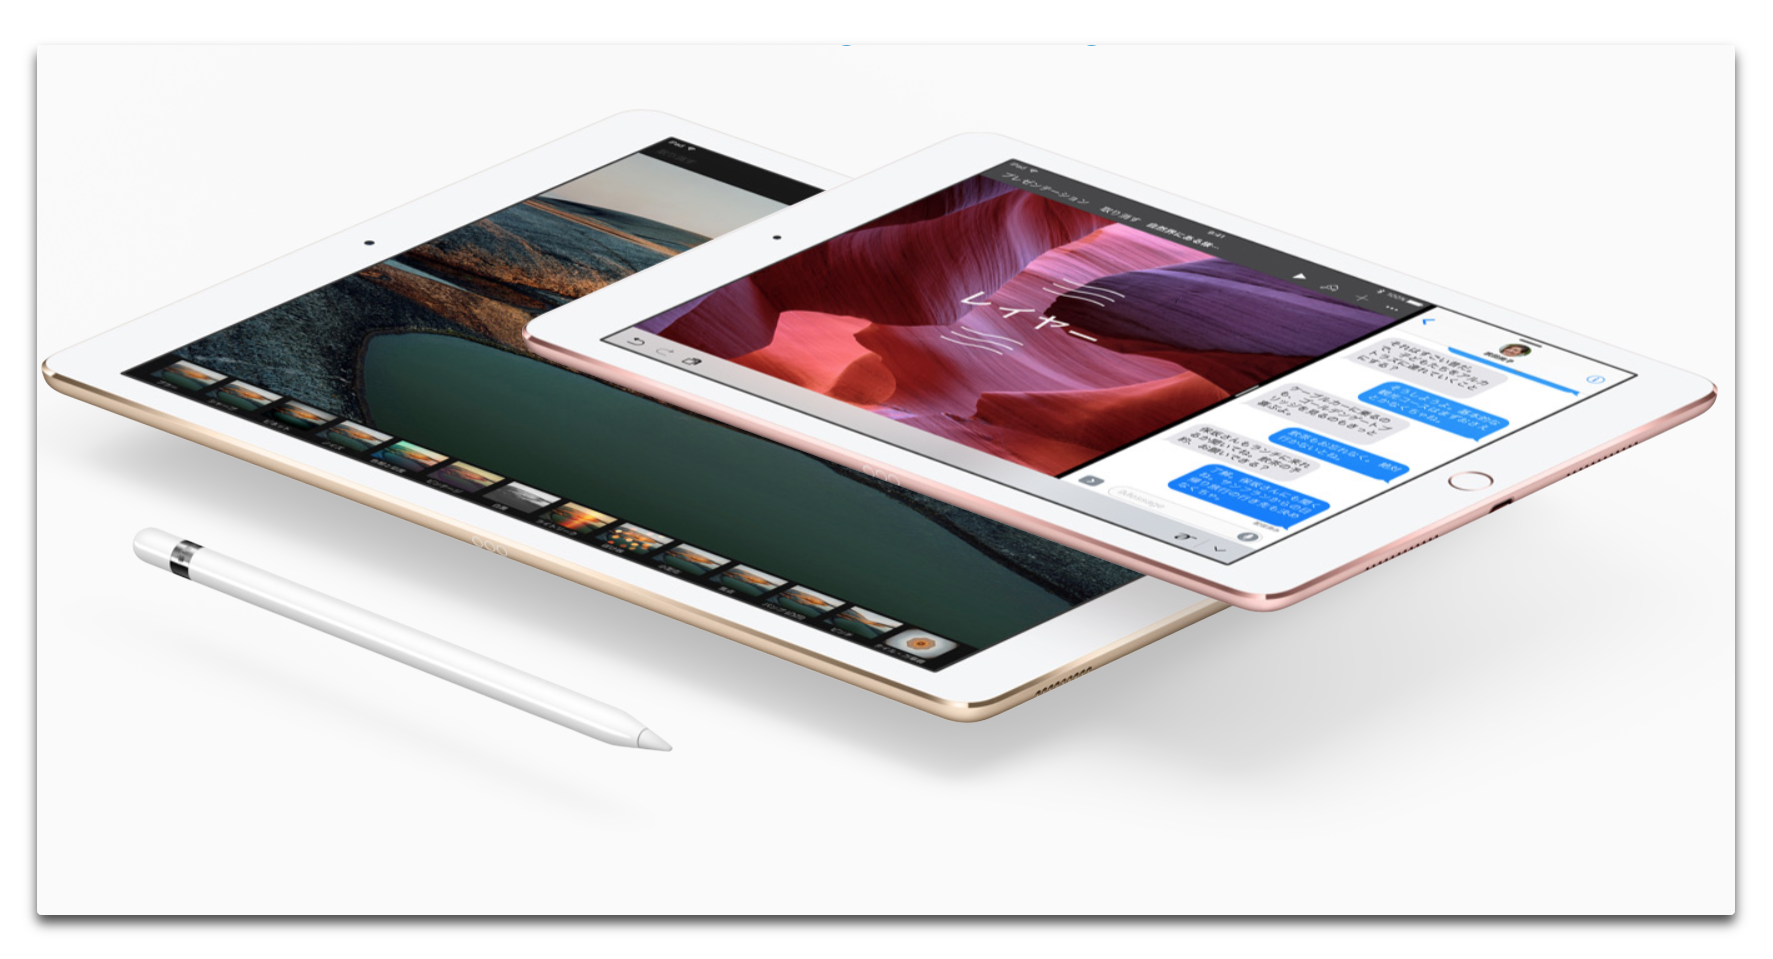 iPadのがん検診アプリは、医療検診を根底から覆す可能性が在ります